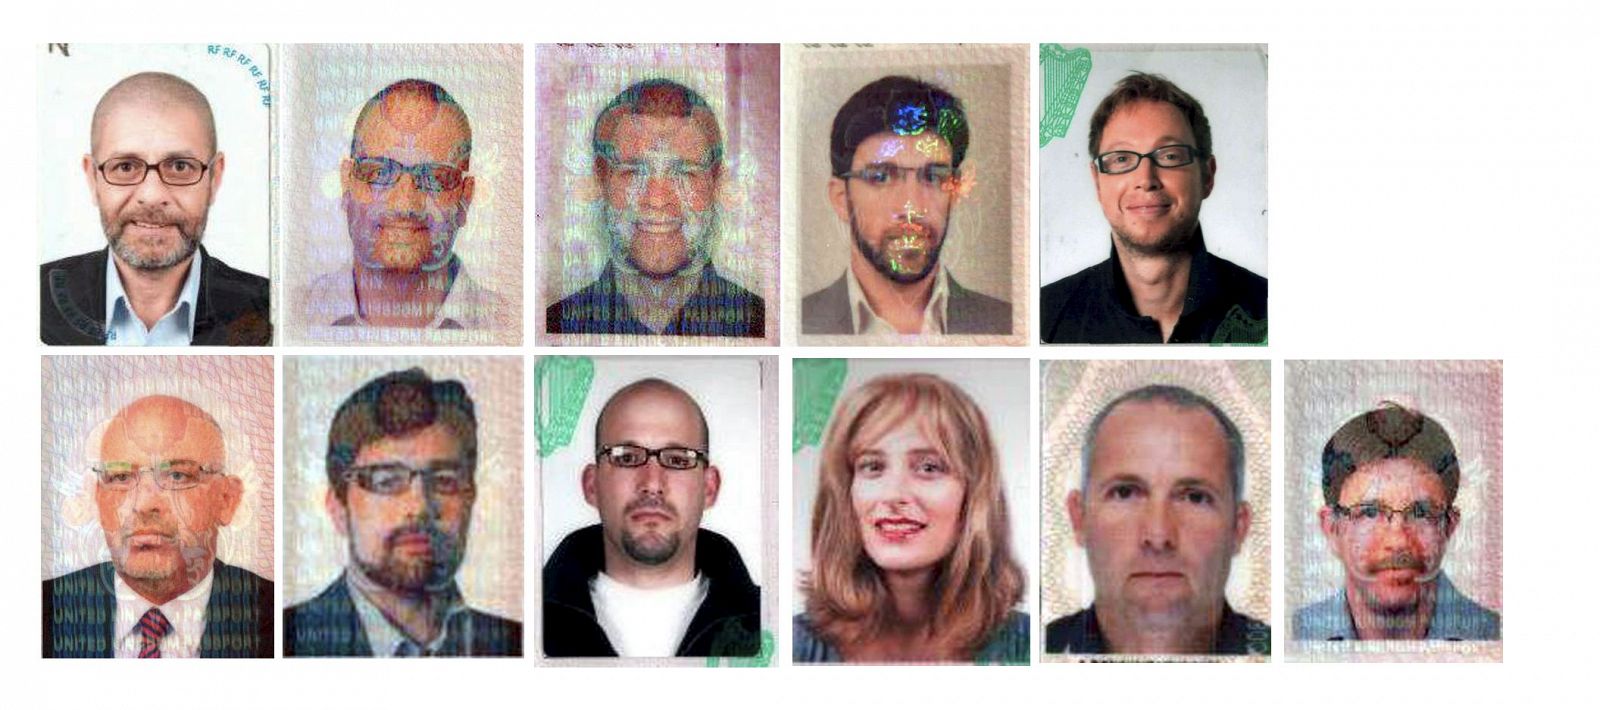 Fotografias facilitadas por la policía de Dubai que muestran a 11 sospechosos de asesinatao con pasaportes europeos. Irlanda y Reino Unidos han asegurados que los documentos son falsos. EFE.